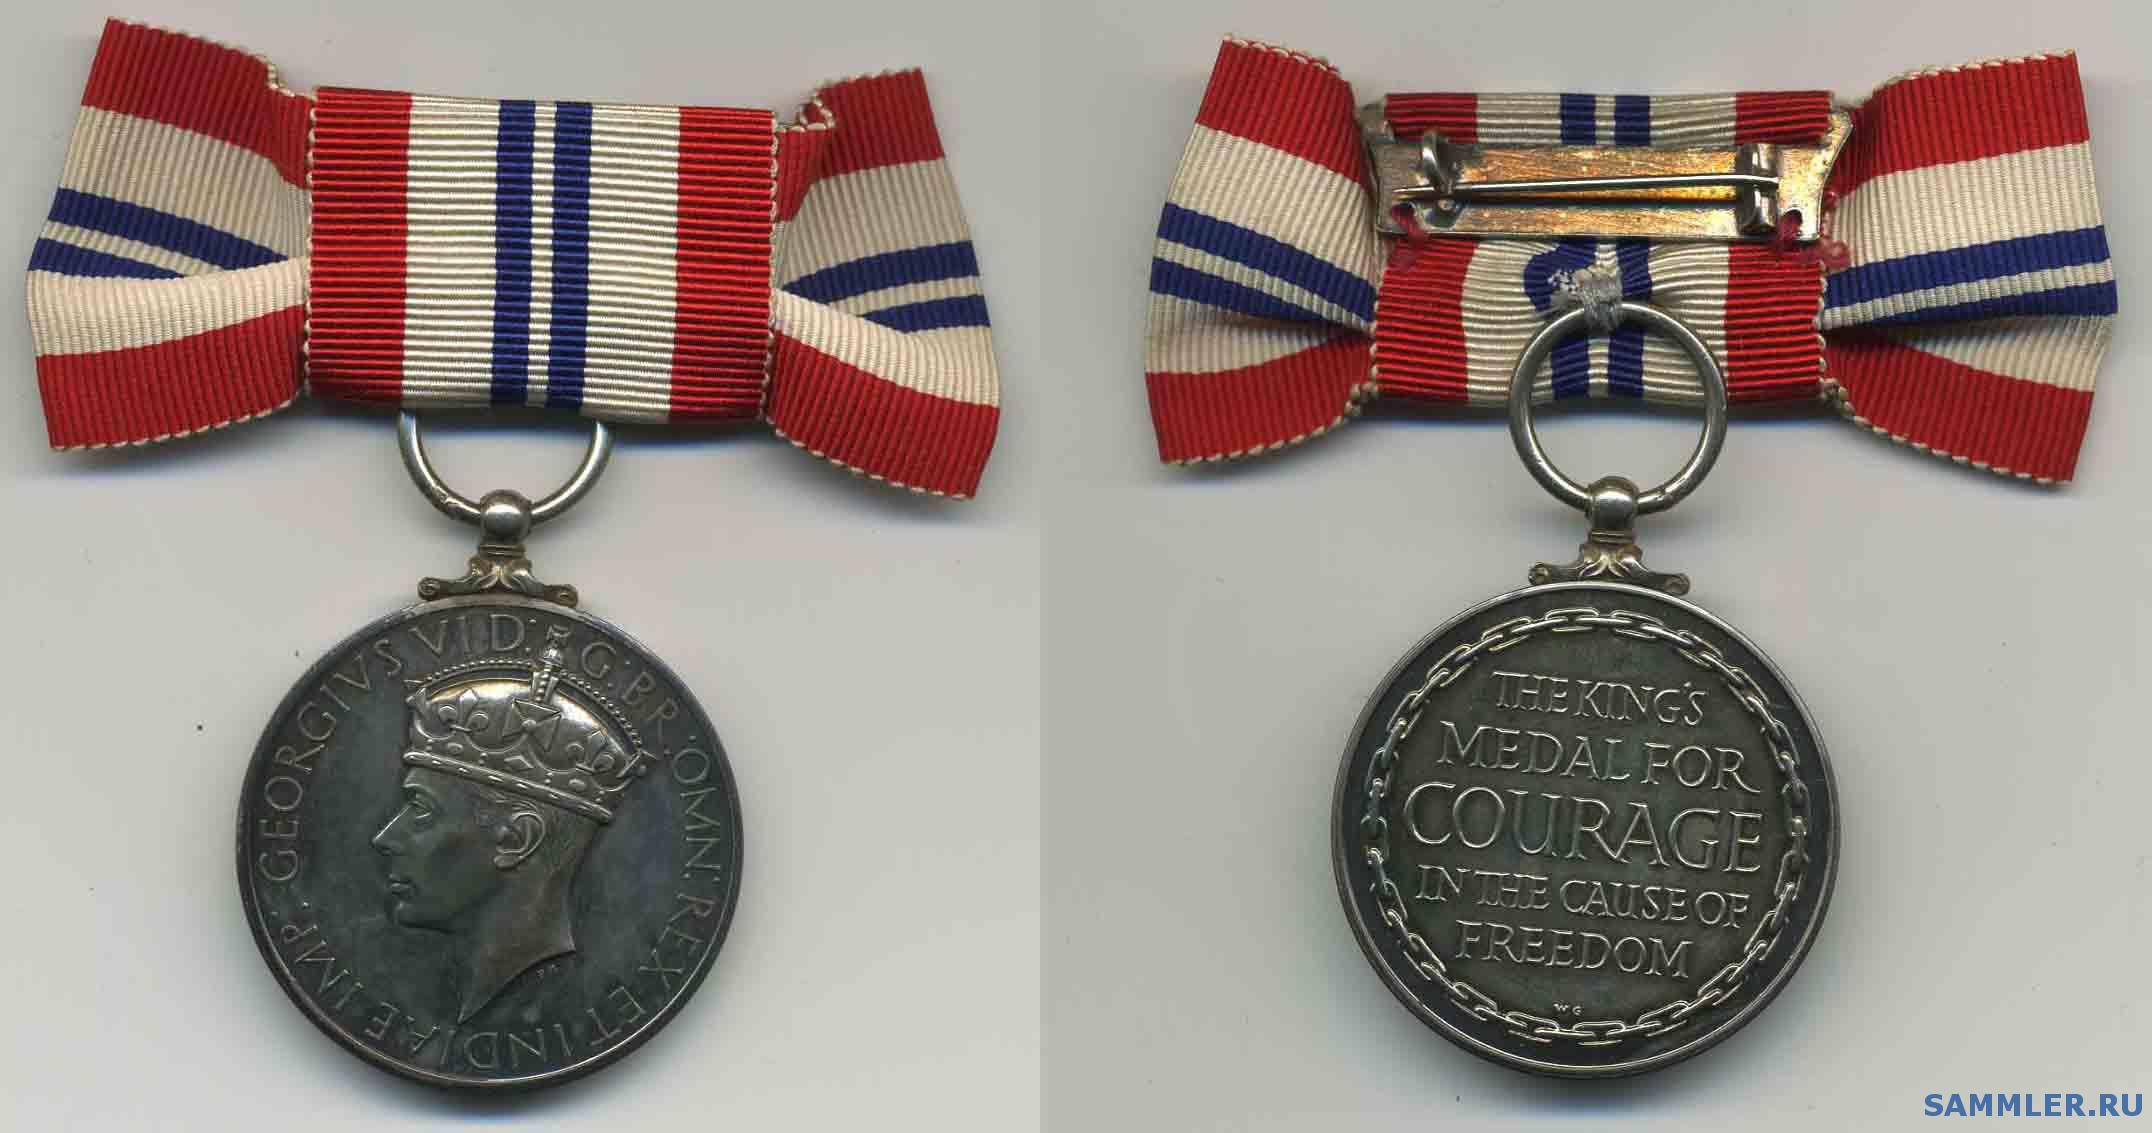 King__s_Medal_for_Courage__G_VI_.jpg